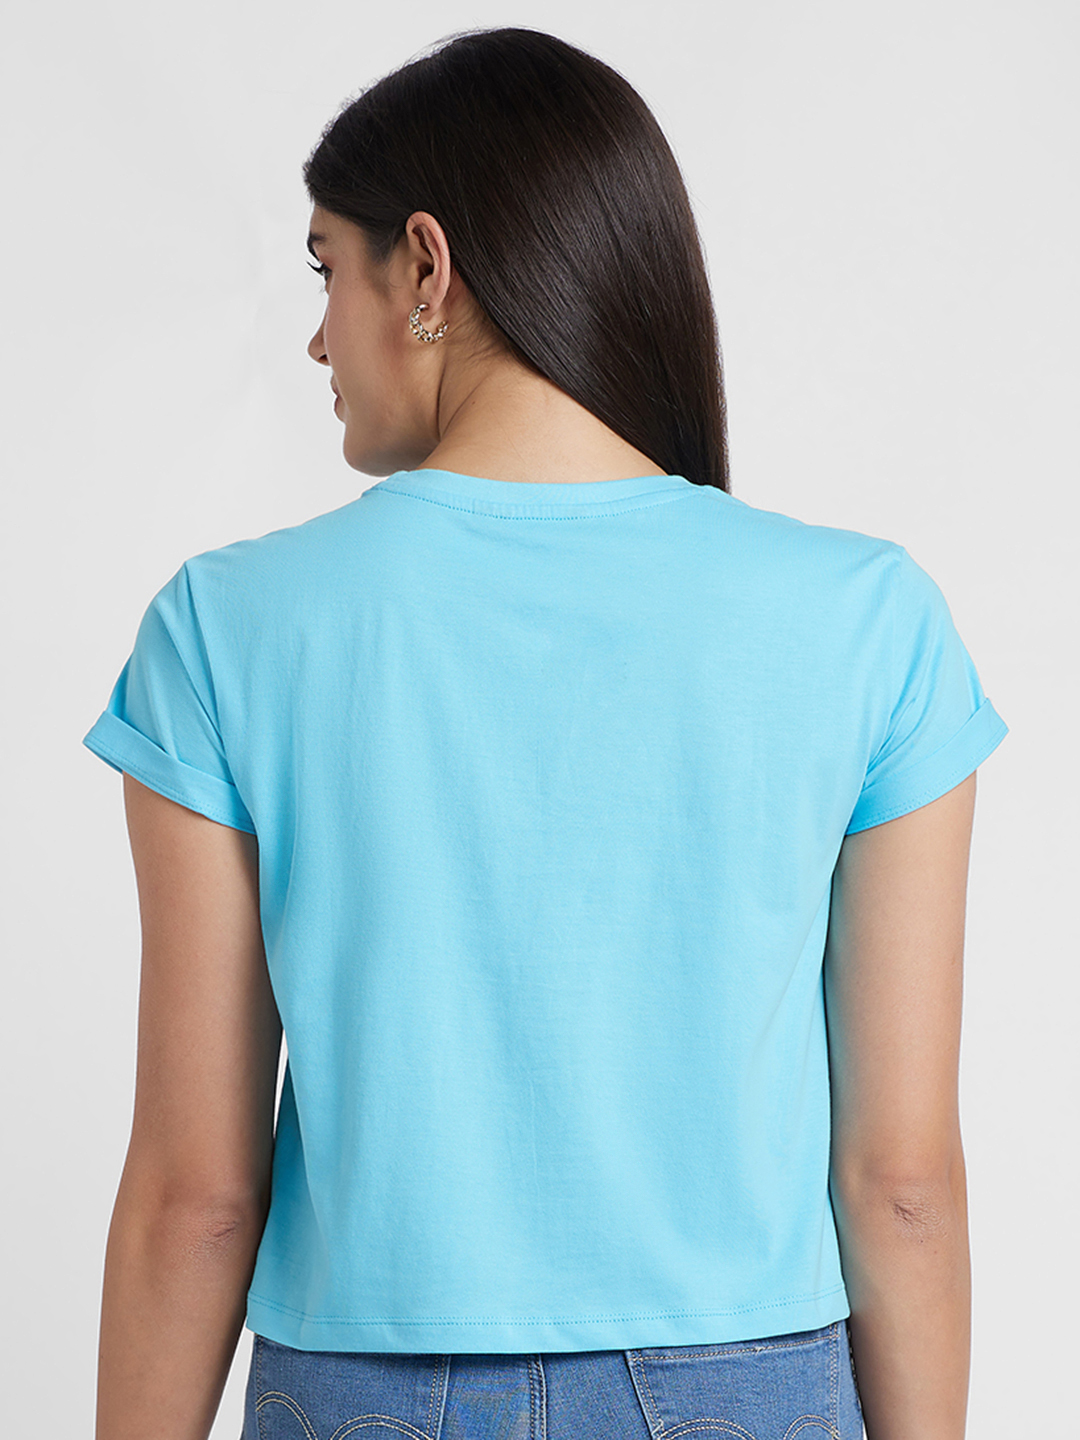 Globus Women Turquoise Printed Cotton Regular Fit Crop Tshirt